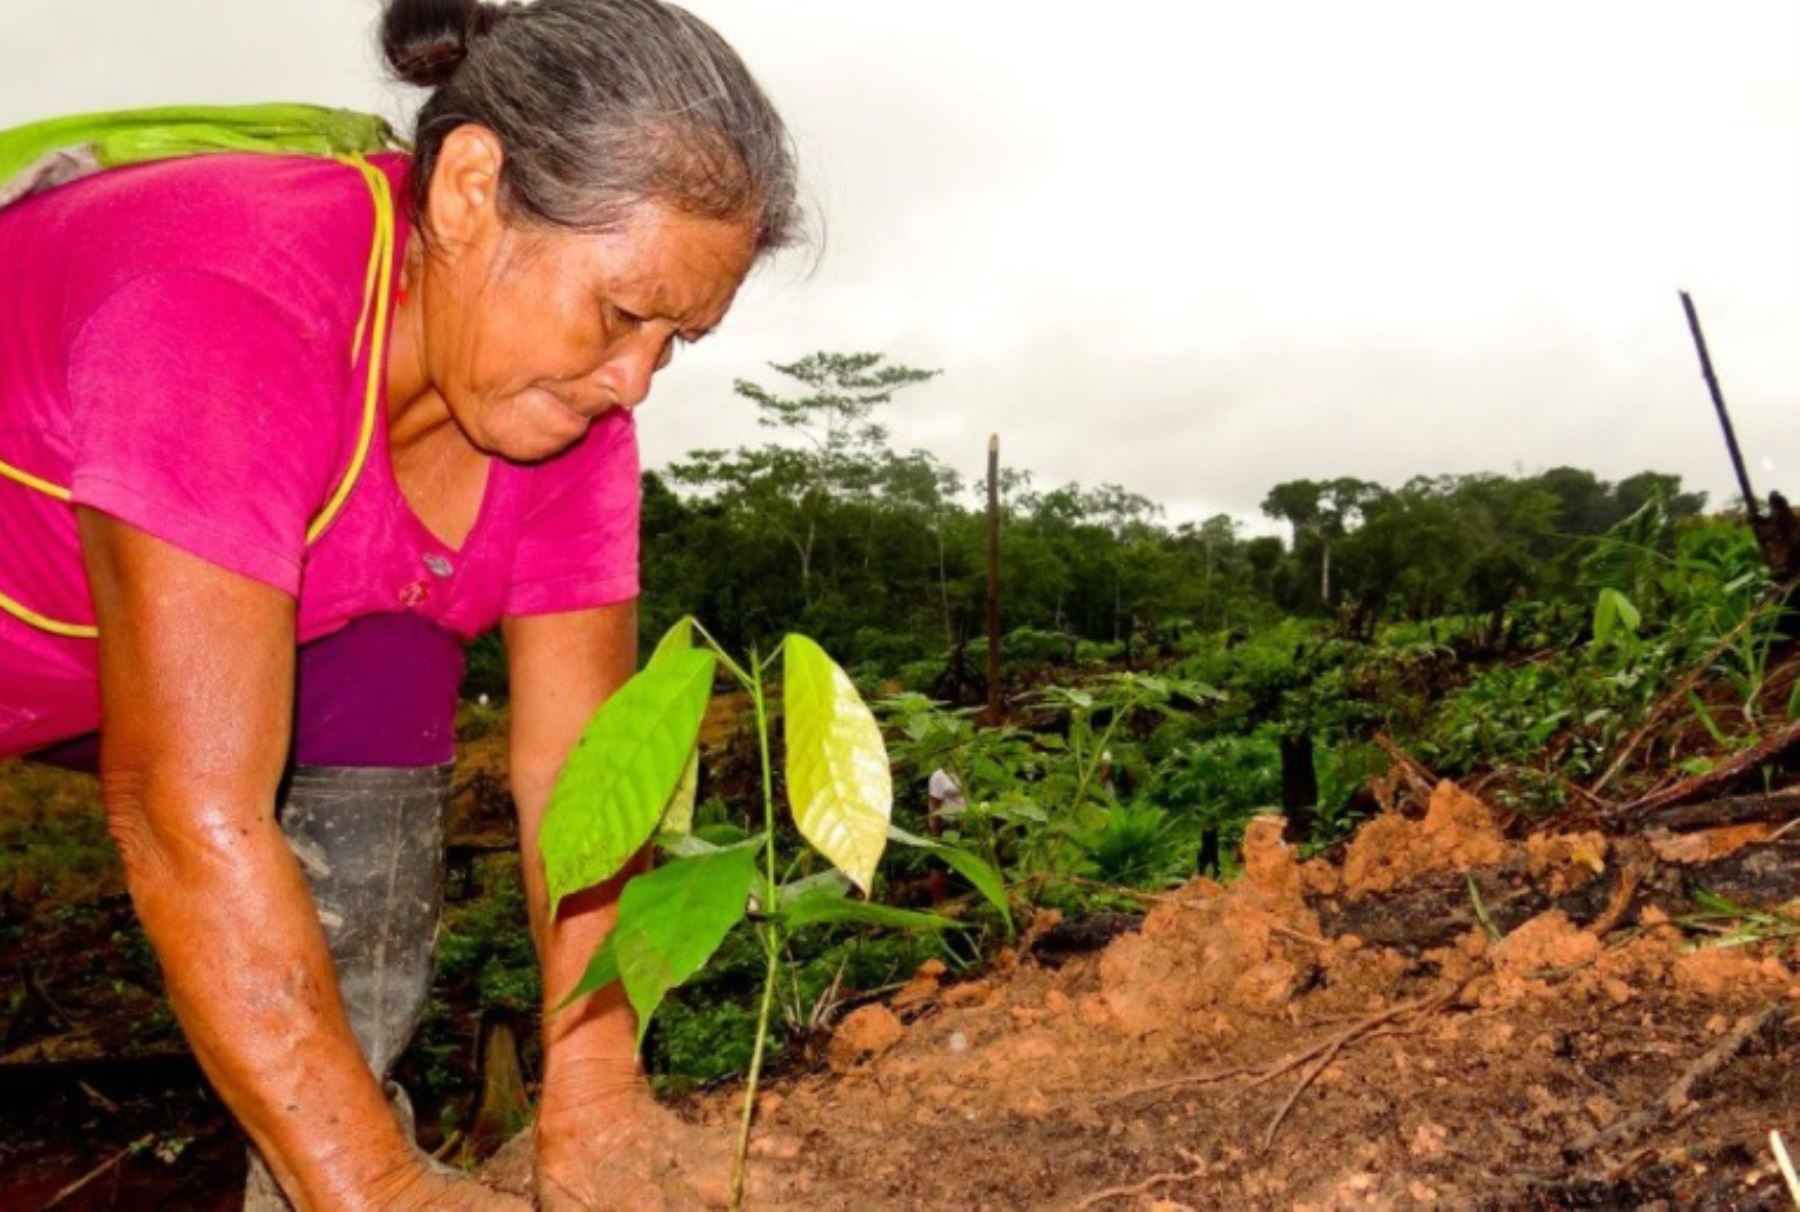 La erradicación de la hoja de coca ilegal irá de la mano con la implementación de cultivos alternativos, sostiene Devida.